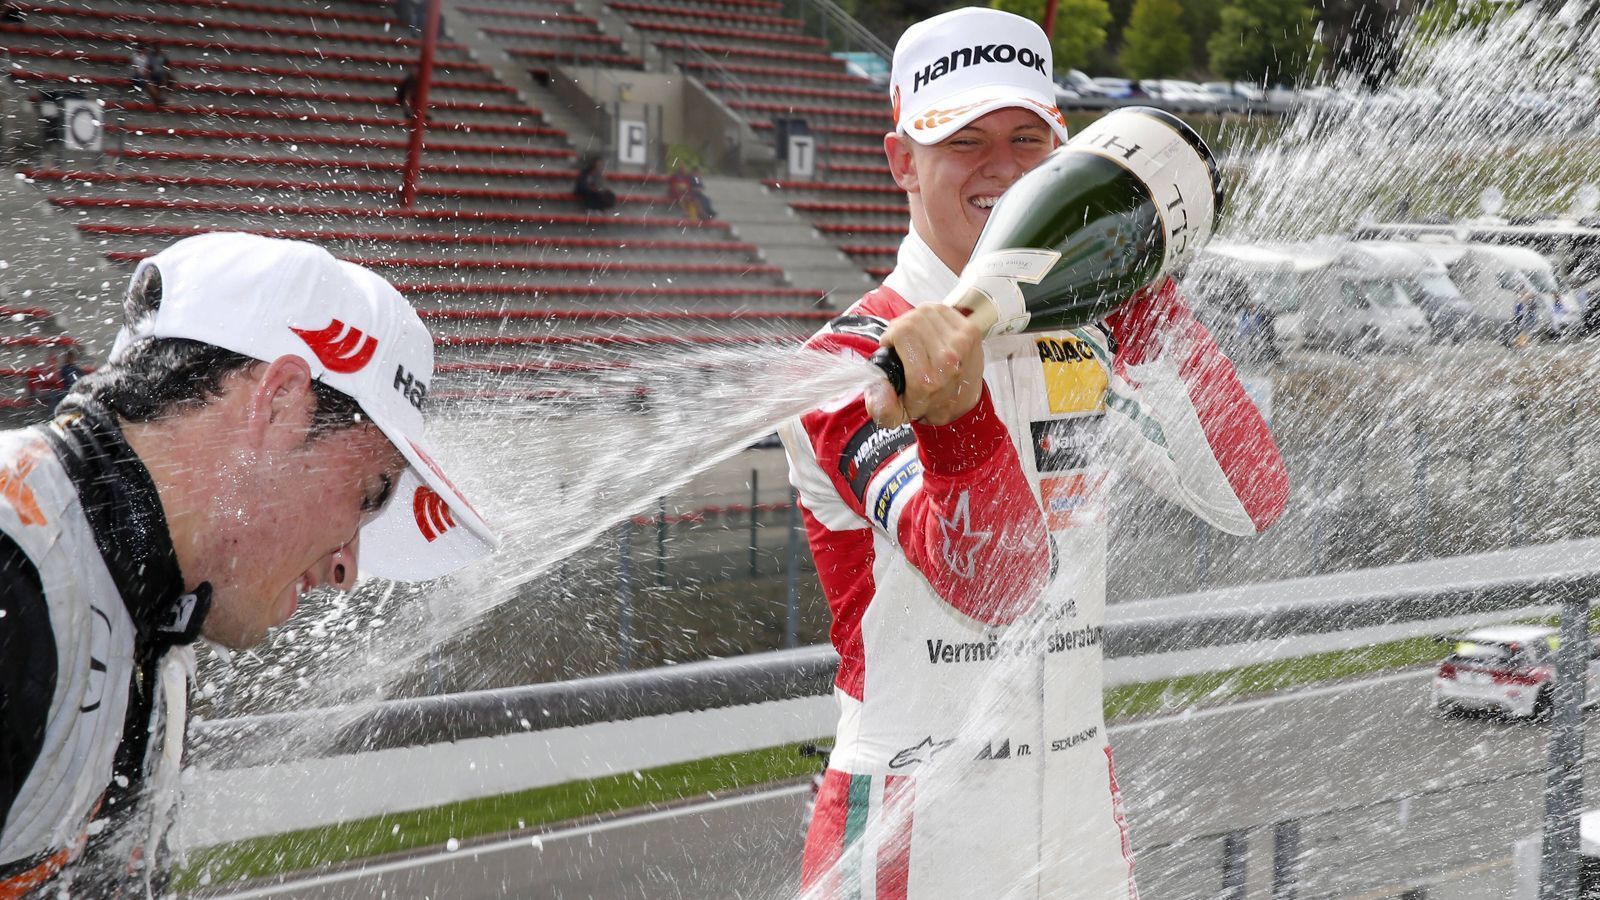 
                <strong>Sensationeller Titel in Formel 3</strong><br>
                Wie schon zuvor in der Formel 4, entwickelte sich Schumacher auch in der höheren Rennserie im zweiten Jahr. So feierte er im Juli 2018 im belgischen Spa am fünften Rennwochenende der Saison seinen ersten Formel-3-Sieg, obwohl er nur von Platz sechs aus ins Rennen ging. Vater Michael fuhr einst seinen ersten Formel-1-Sieg in Spa ein. Bereits zuvor schaffte es Mick bei den Rennen in Mogyorod und Zaandvort als Dritter jeweils auf das Podest der Formel-3-Serie. Und auch nach dem Spa-Sieg ging es stark weiter - so stark, dass das Motorsport-Talent mit 365 Punkten sogar den Titel in der Formel 3 holte.
              